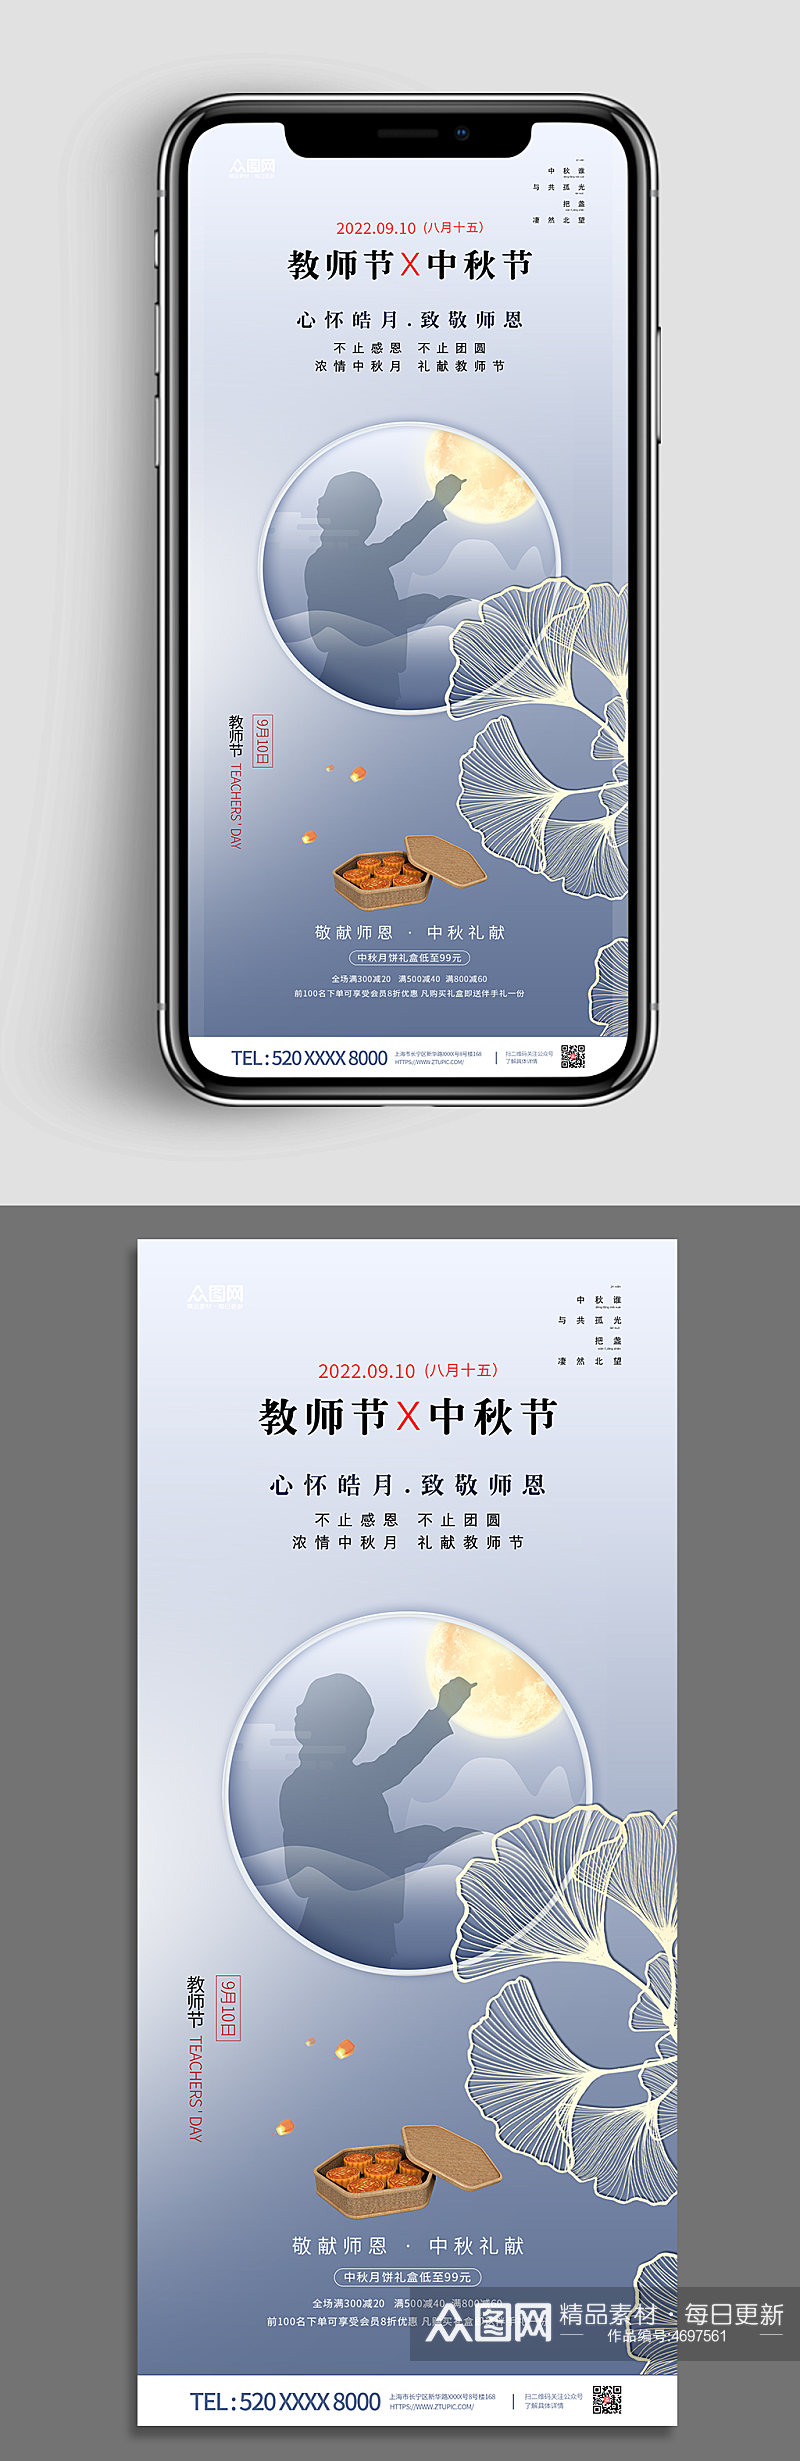 中秋节教师节双节同庆地产手机壁纸海报素材